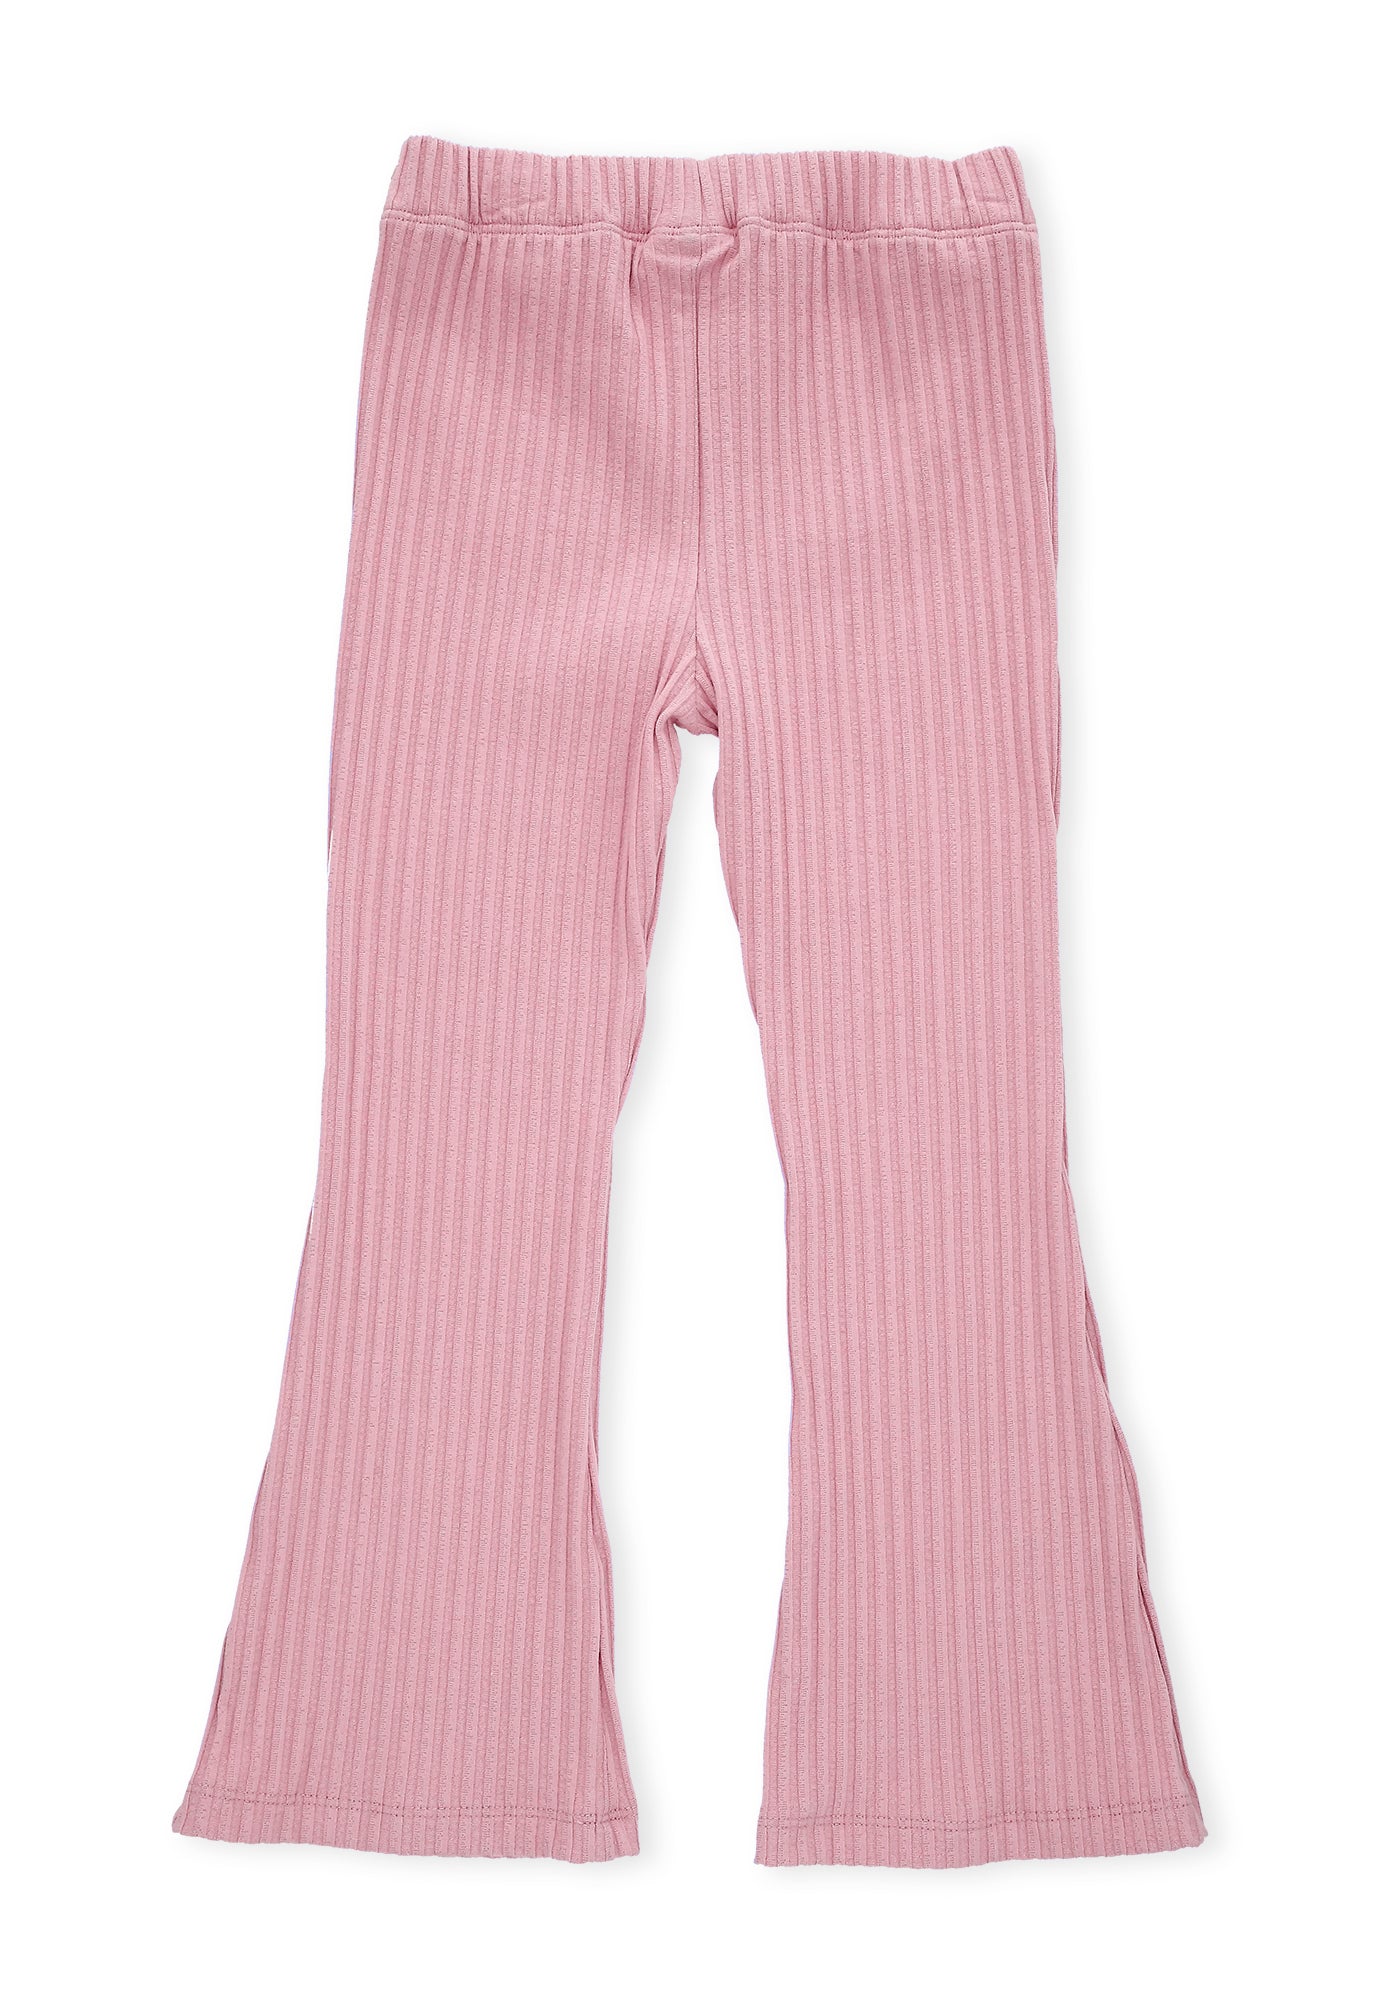 Pantalón rosado claro fondo entero, con bota ancha y pretina resortada para bebé niña